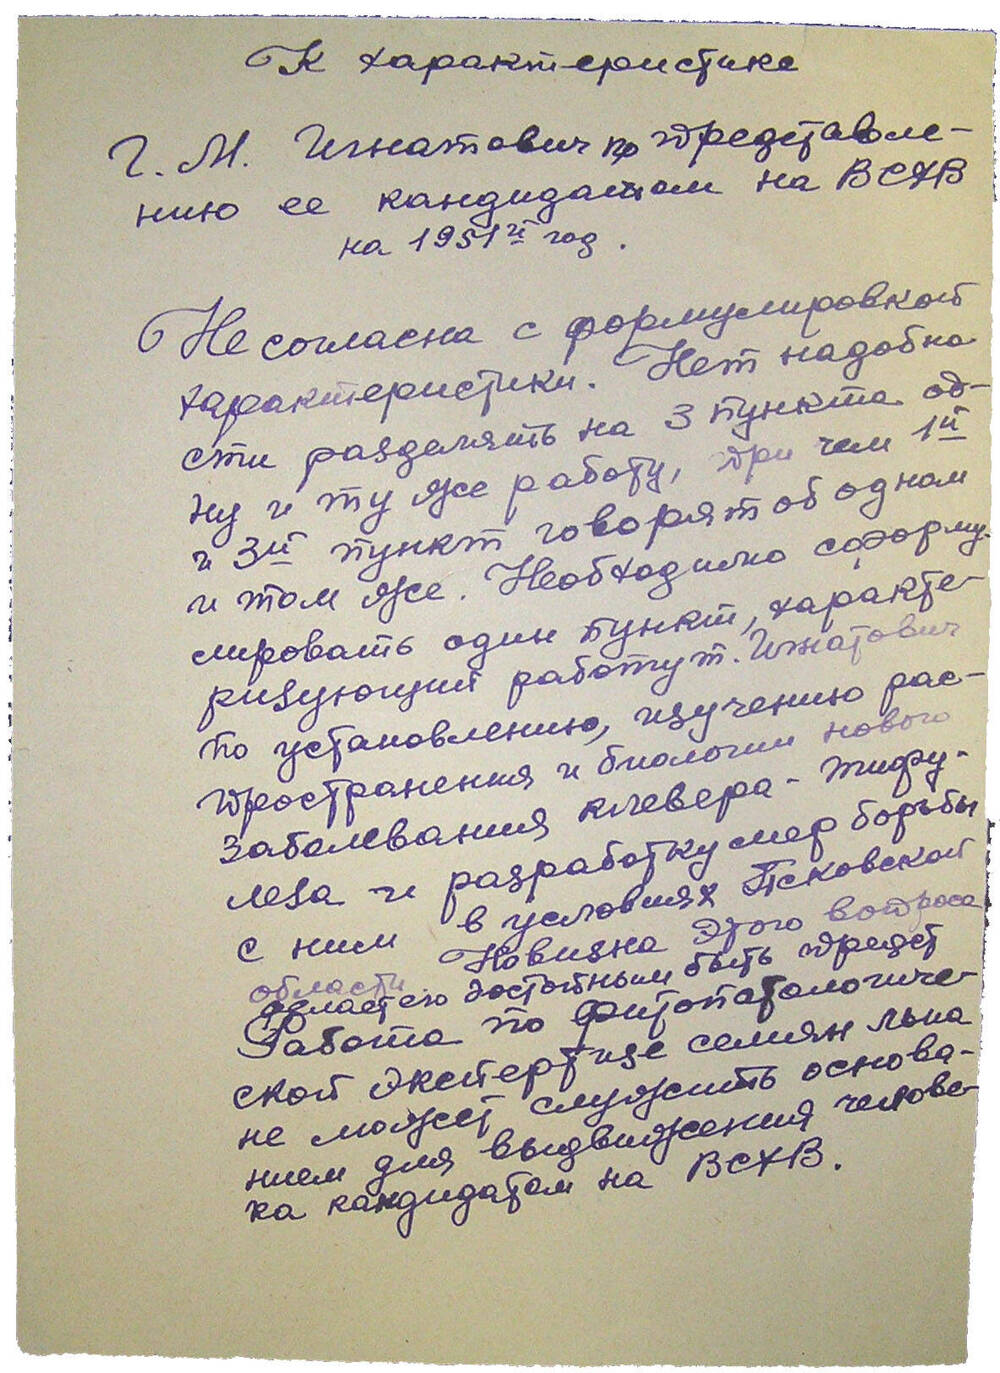 Записка Т.Т. Поповой К характеристике Г.М. Игнатович по представлению ее кандидатом на ВСХВ на 1951 год